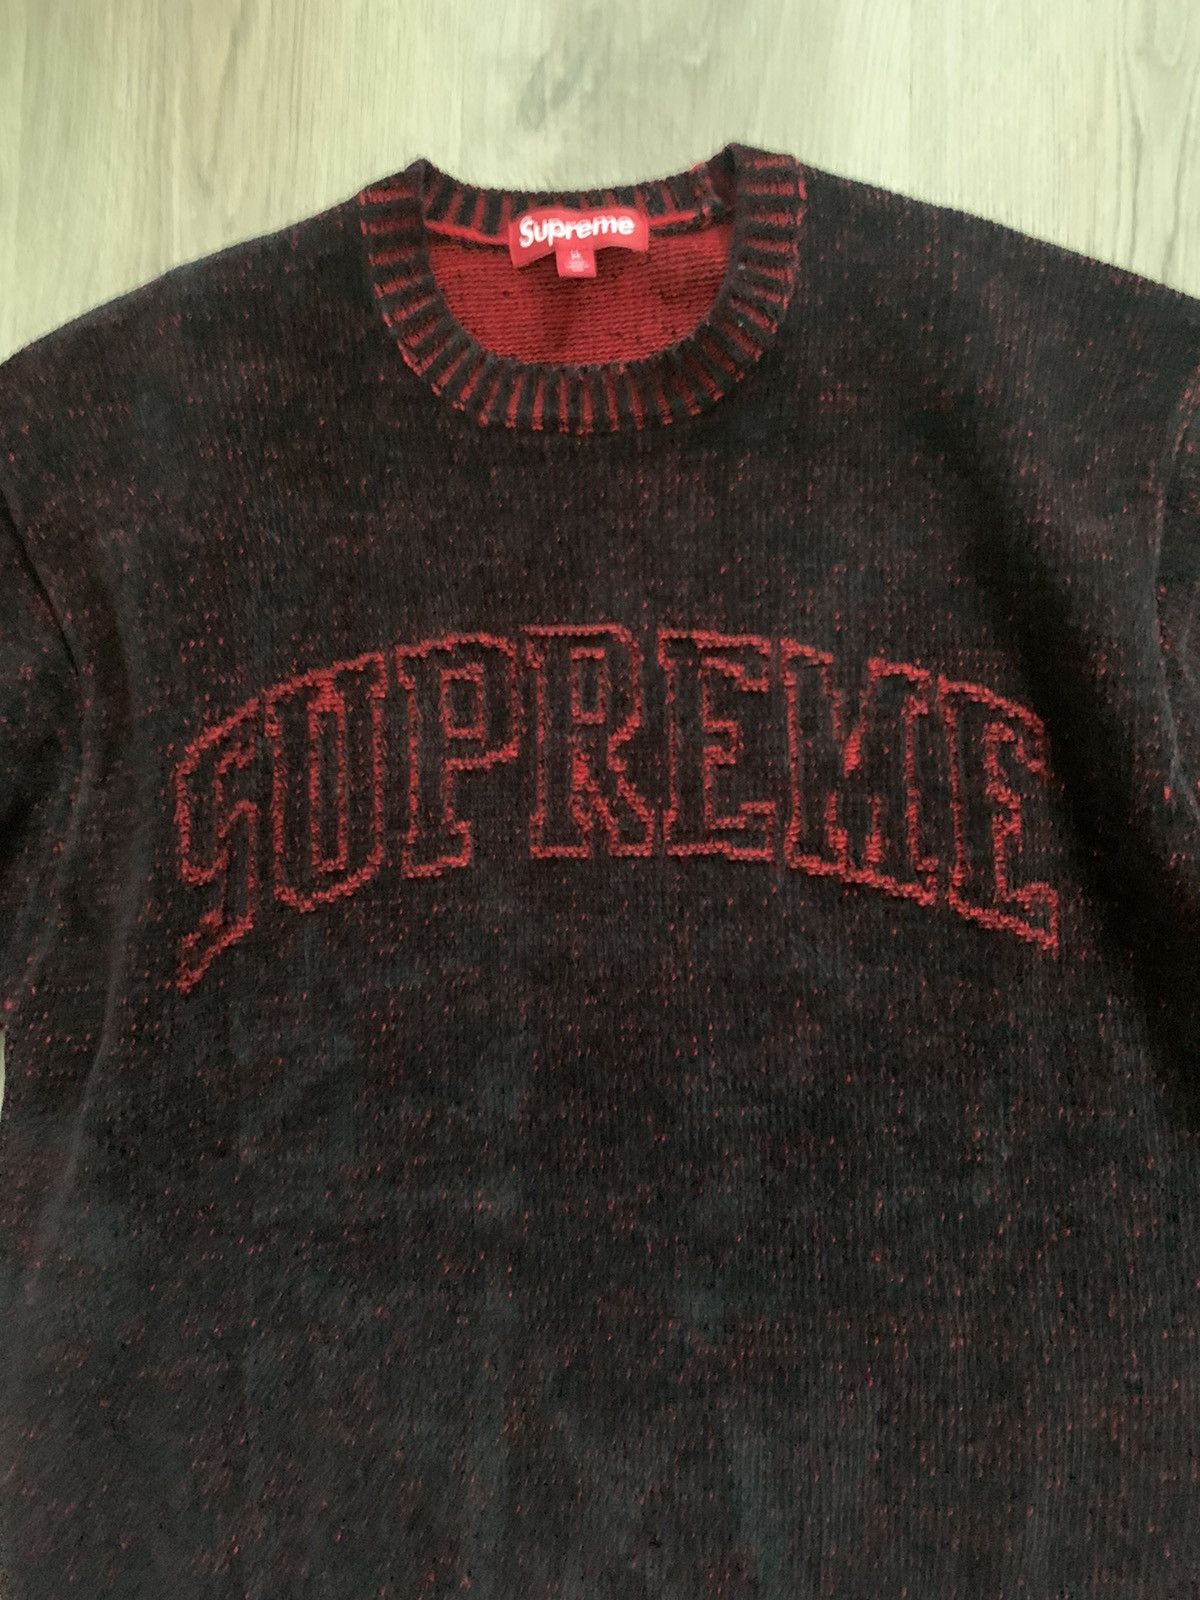 Supreme Supreme Contrast Arc Sweater | Grailed